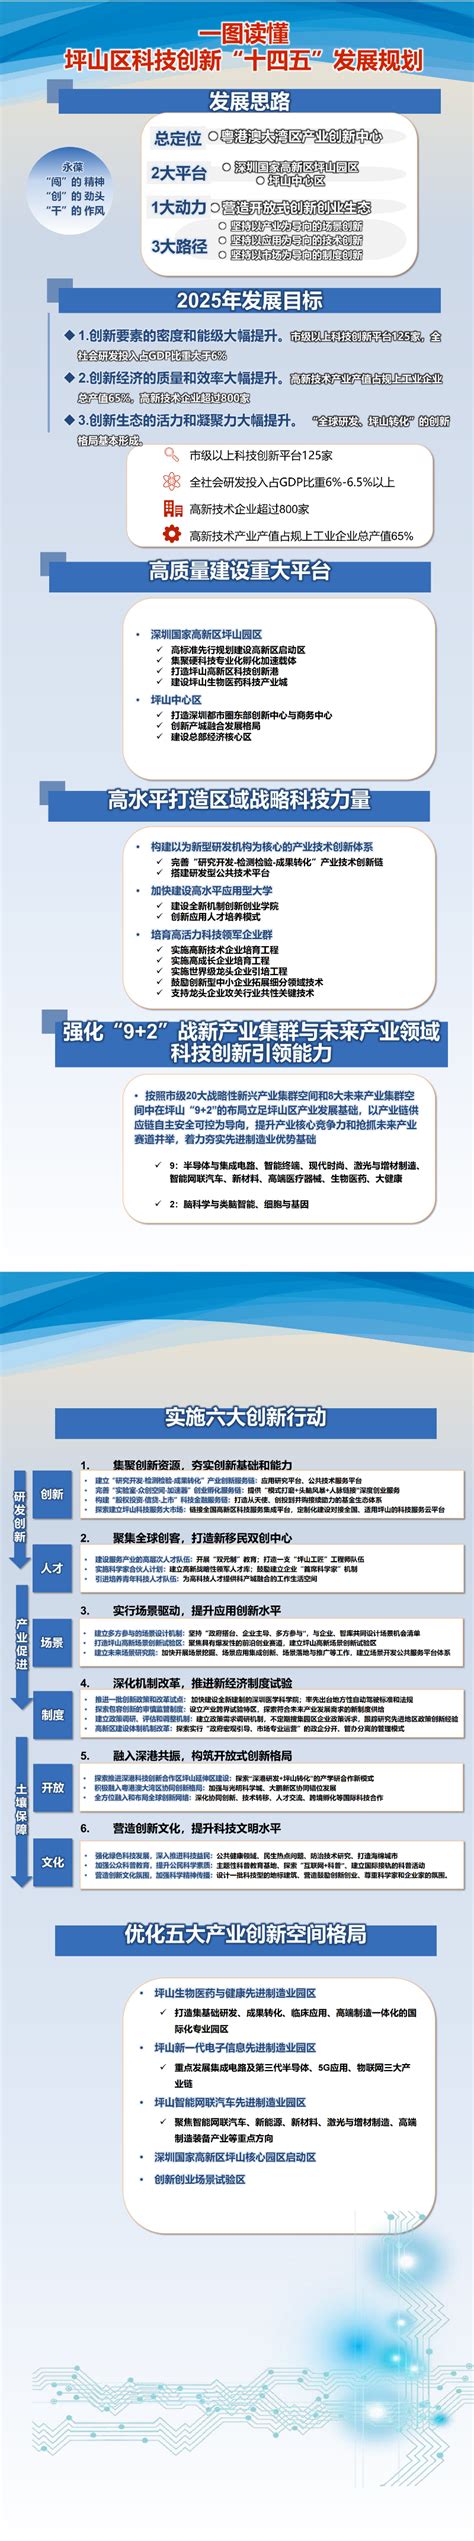 深圳出台科技创新“十四五”规划全文 深圳披露未来5年科创布局